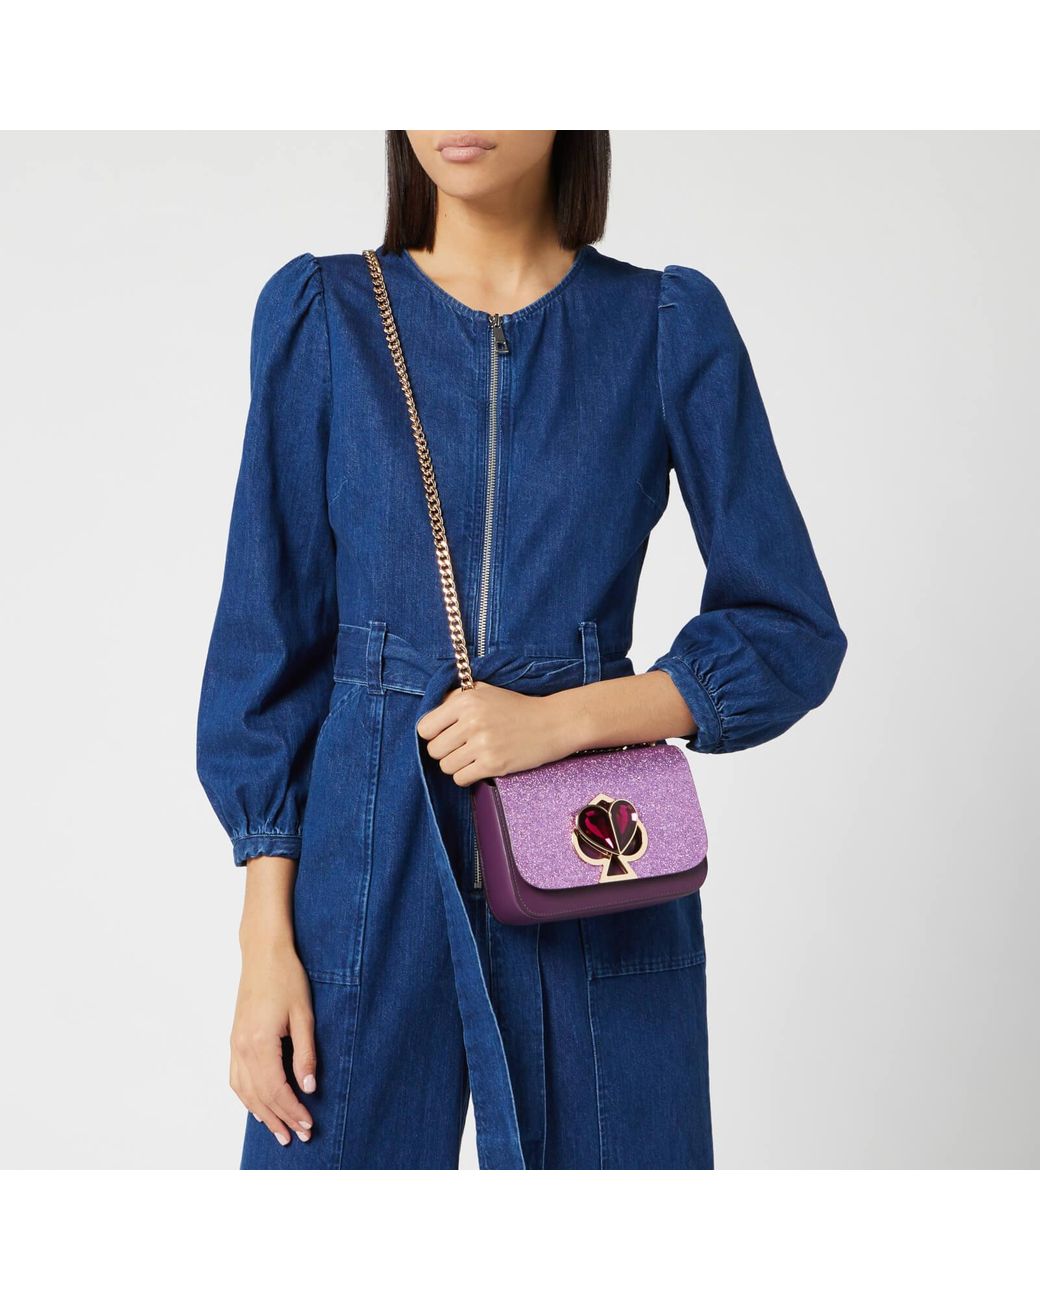 Kate Spade Nicola Twistlock Small Top Handle Bag in Blue